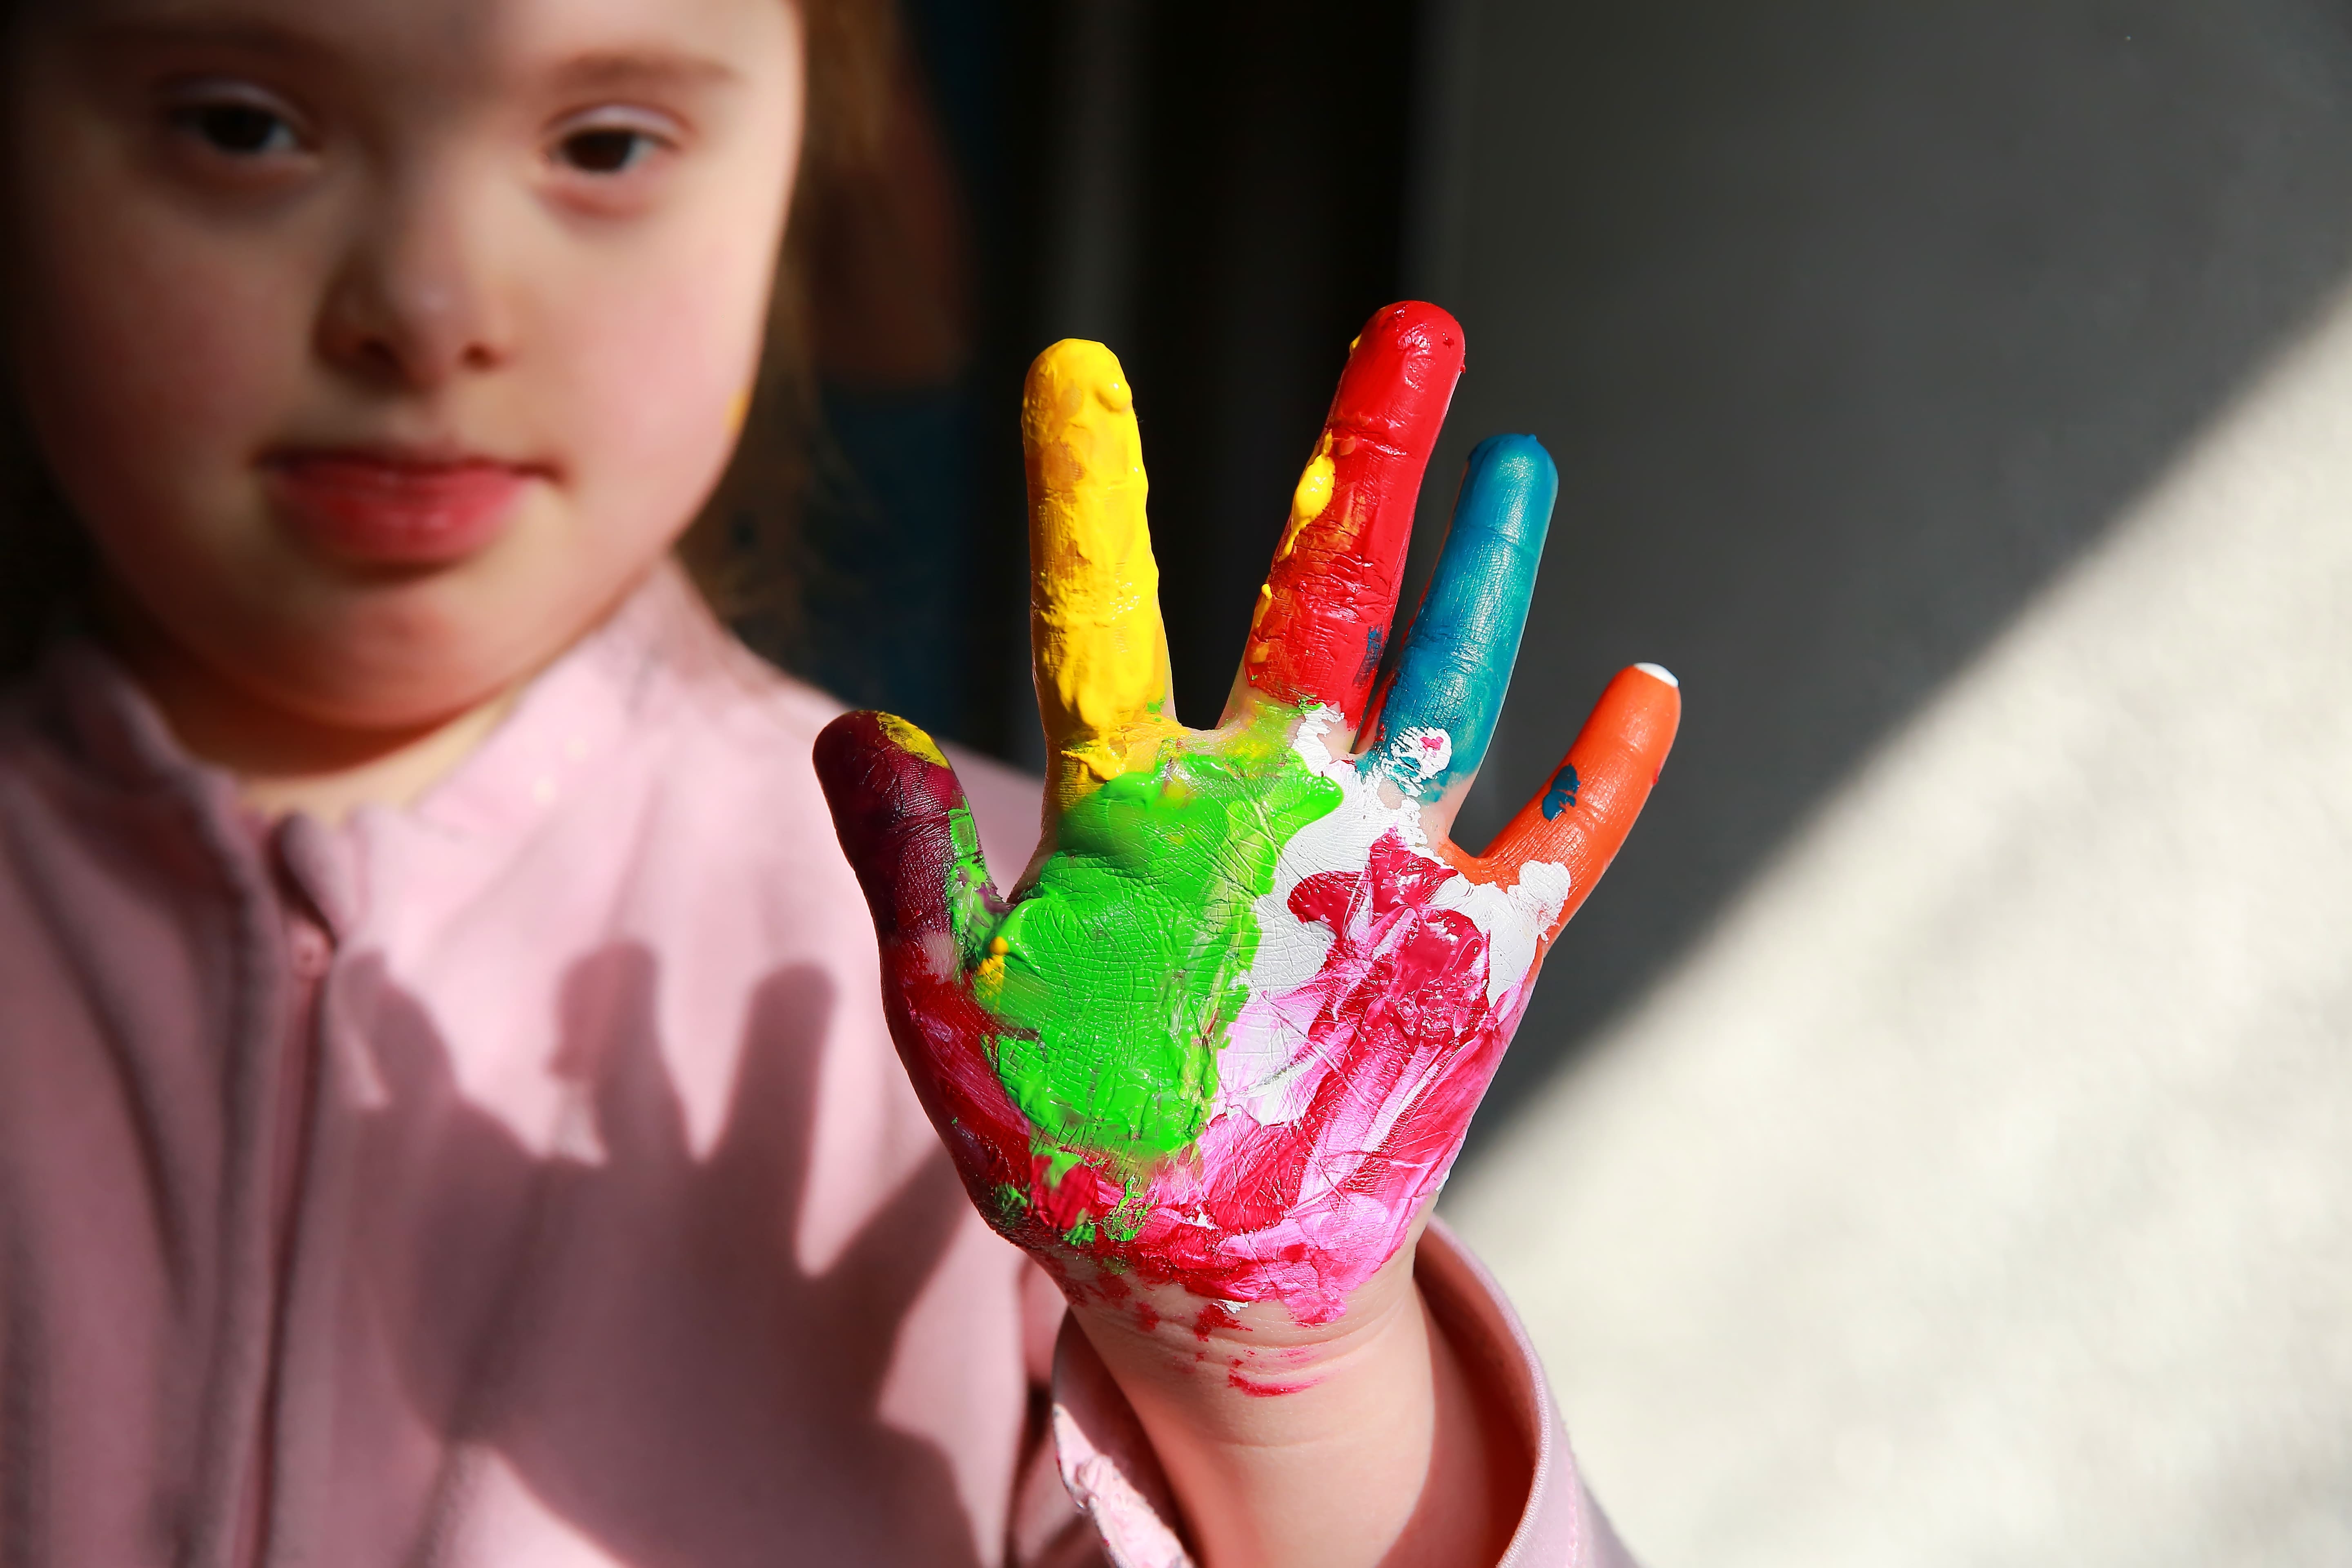 Enfant ayant des besoins spécifiques tendant une main peinte de plusieurs couleurs